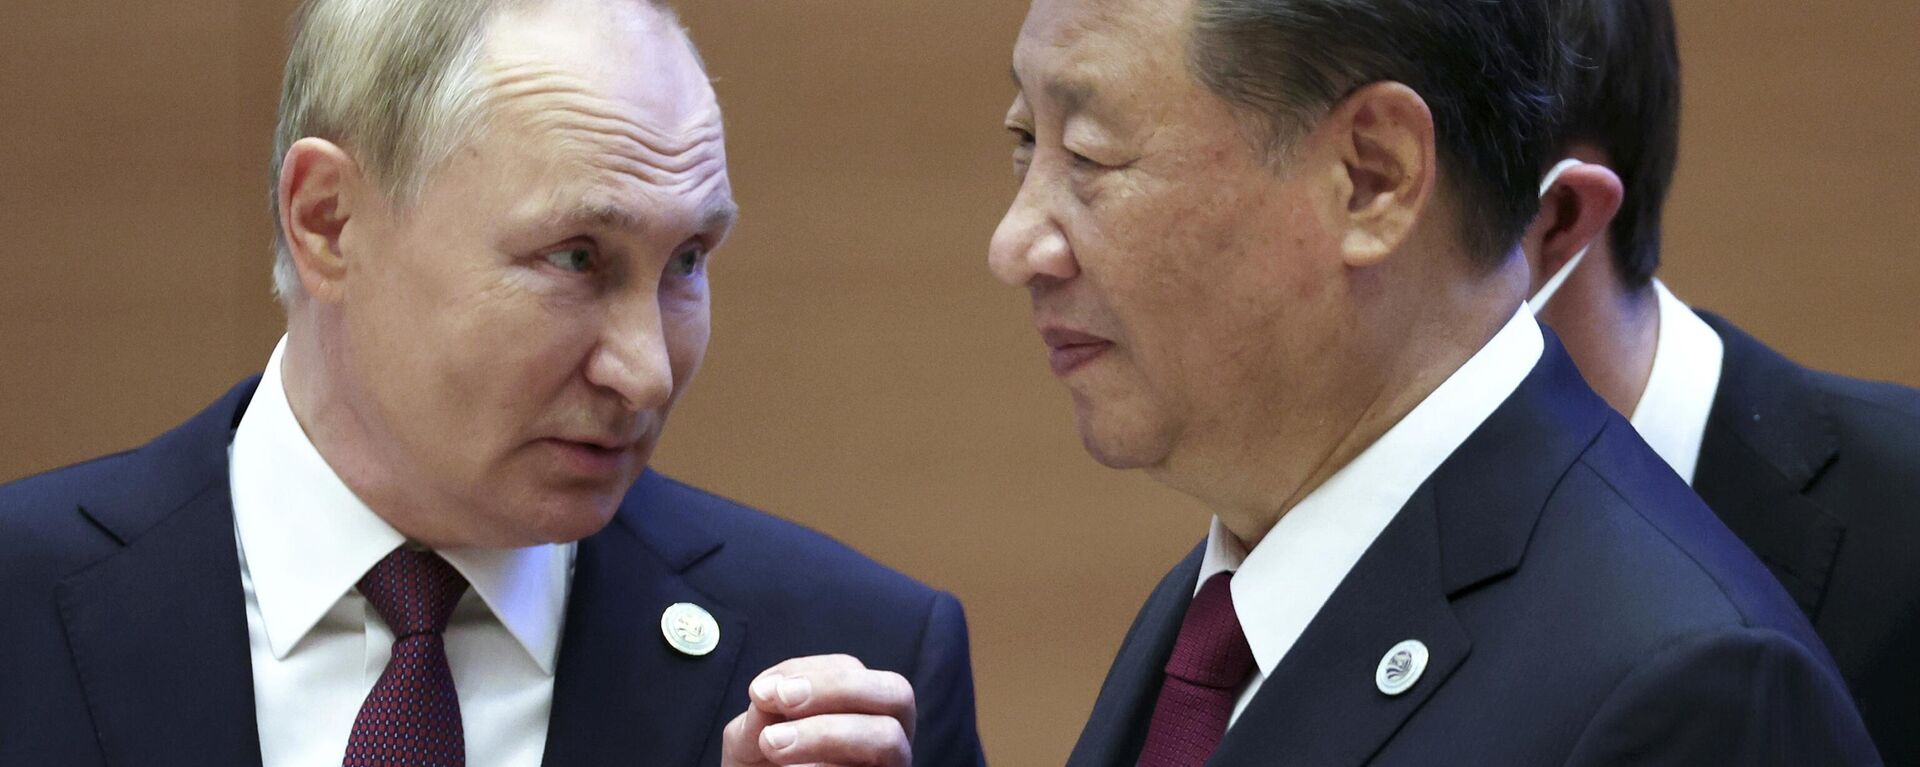 Vladimir Putin (à esquerda) e Xi Jinping (à direita), presidentes da Rússia e da China, respectivamente, durante cúpula da Organização de Cooperação de Xangai (OCX) em Samarkand, Uzbequistão, 16 de setembro de 2022 - Sputnik Brasil, 1920, 20.03.2023